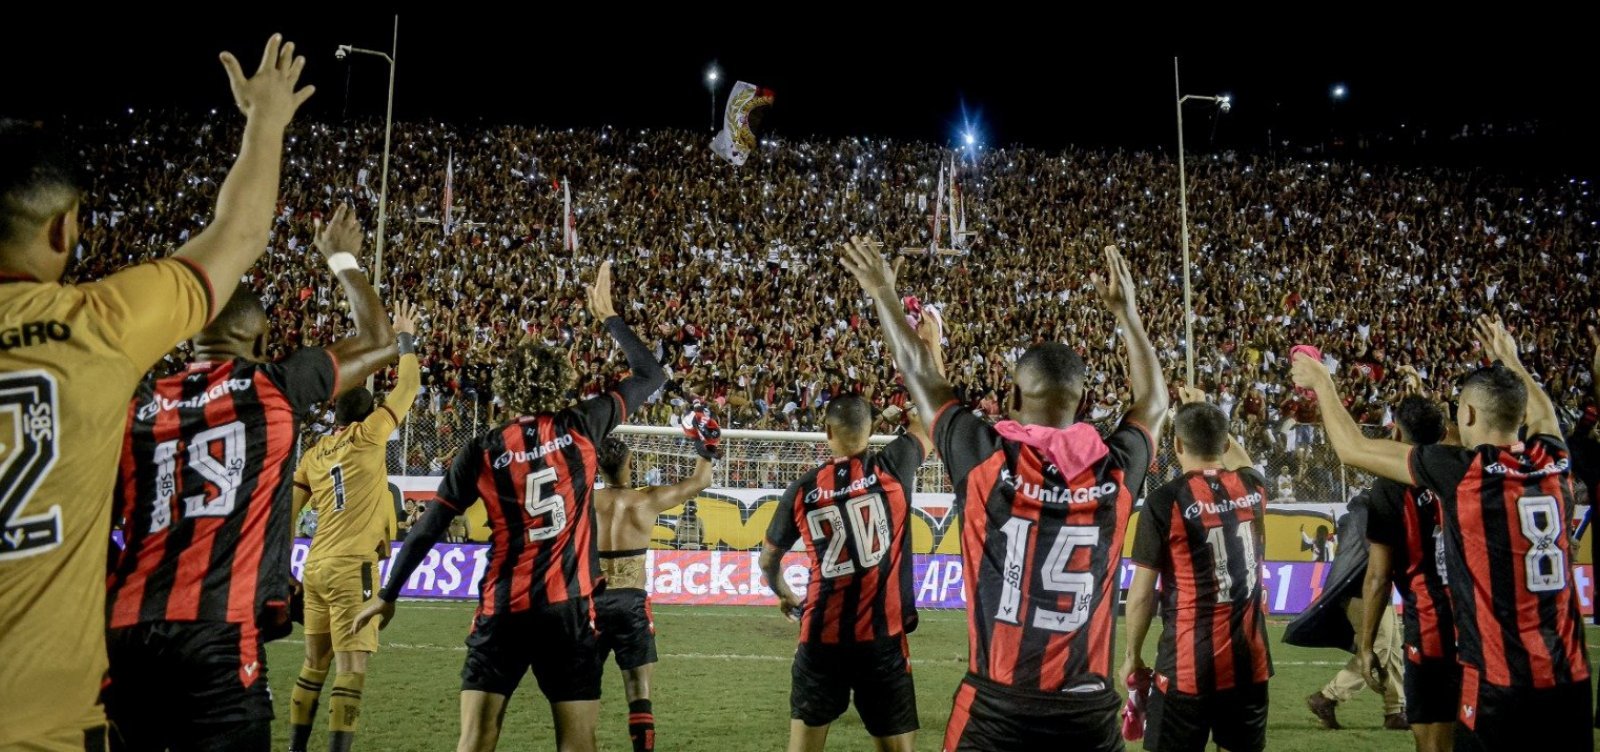 Taça de campeão da série B será entregue ao Vitória no Barradão, em partida contra o Sport